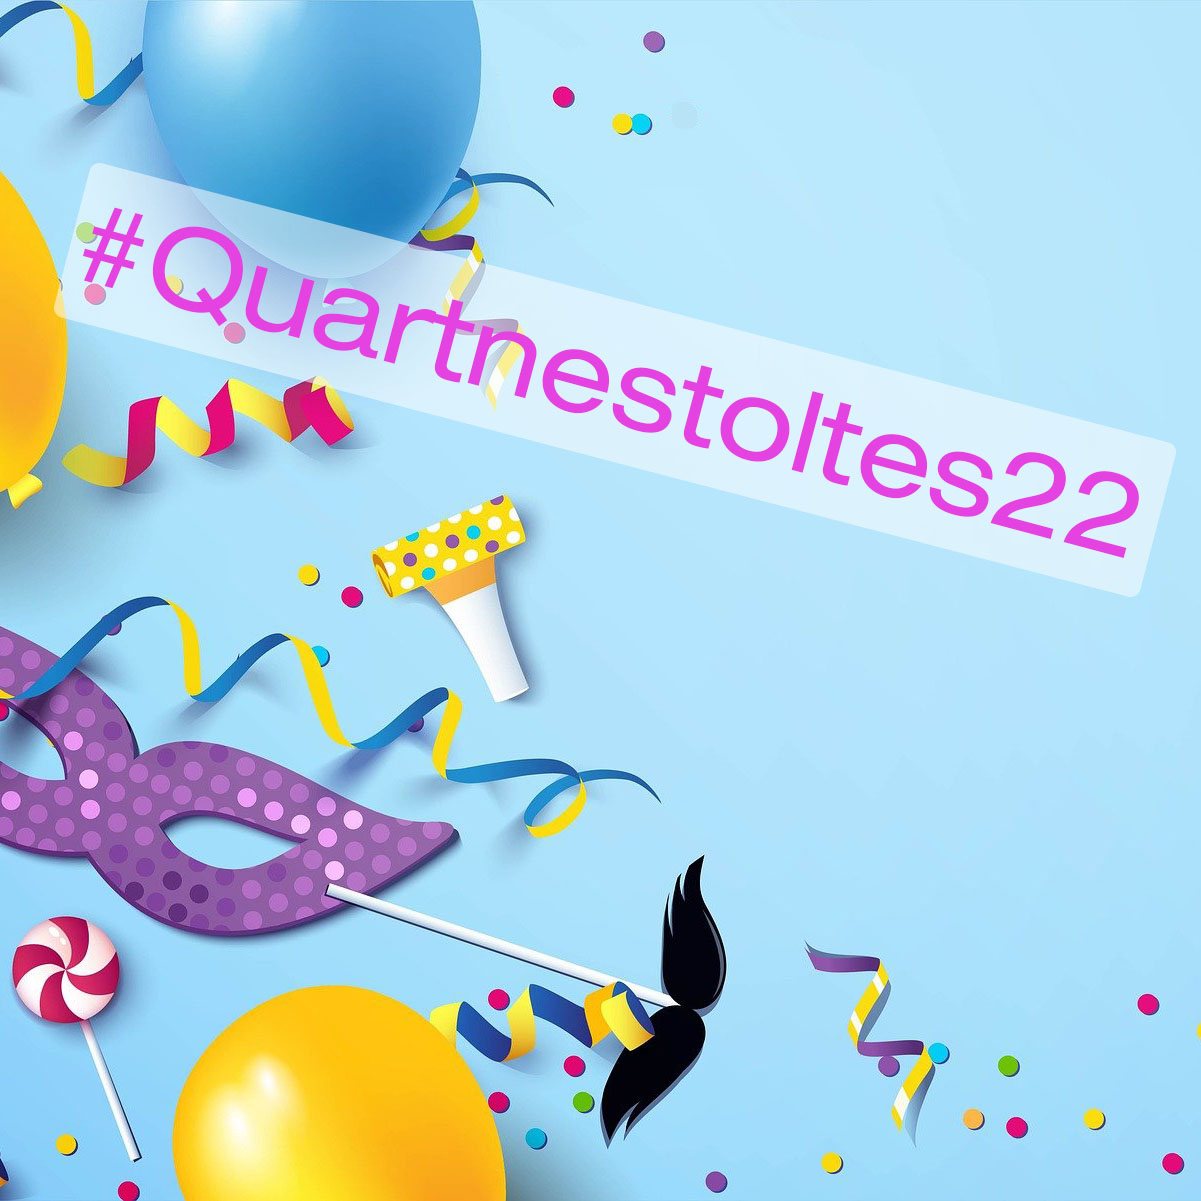 Guanyador@s del concurs #Quartnestoltes22